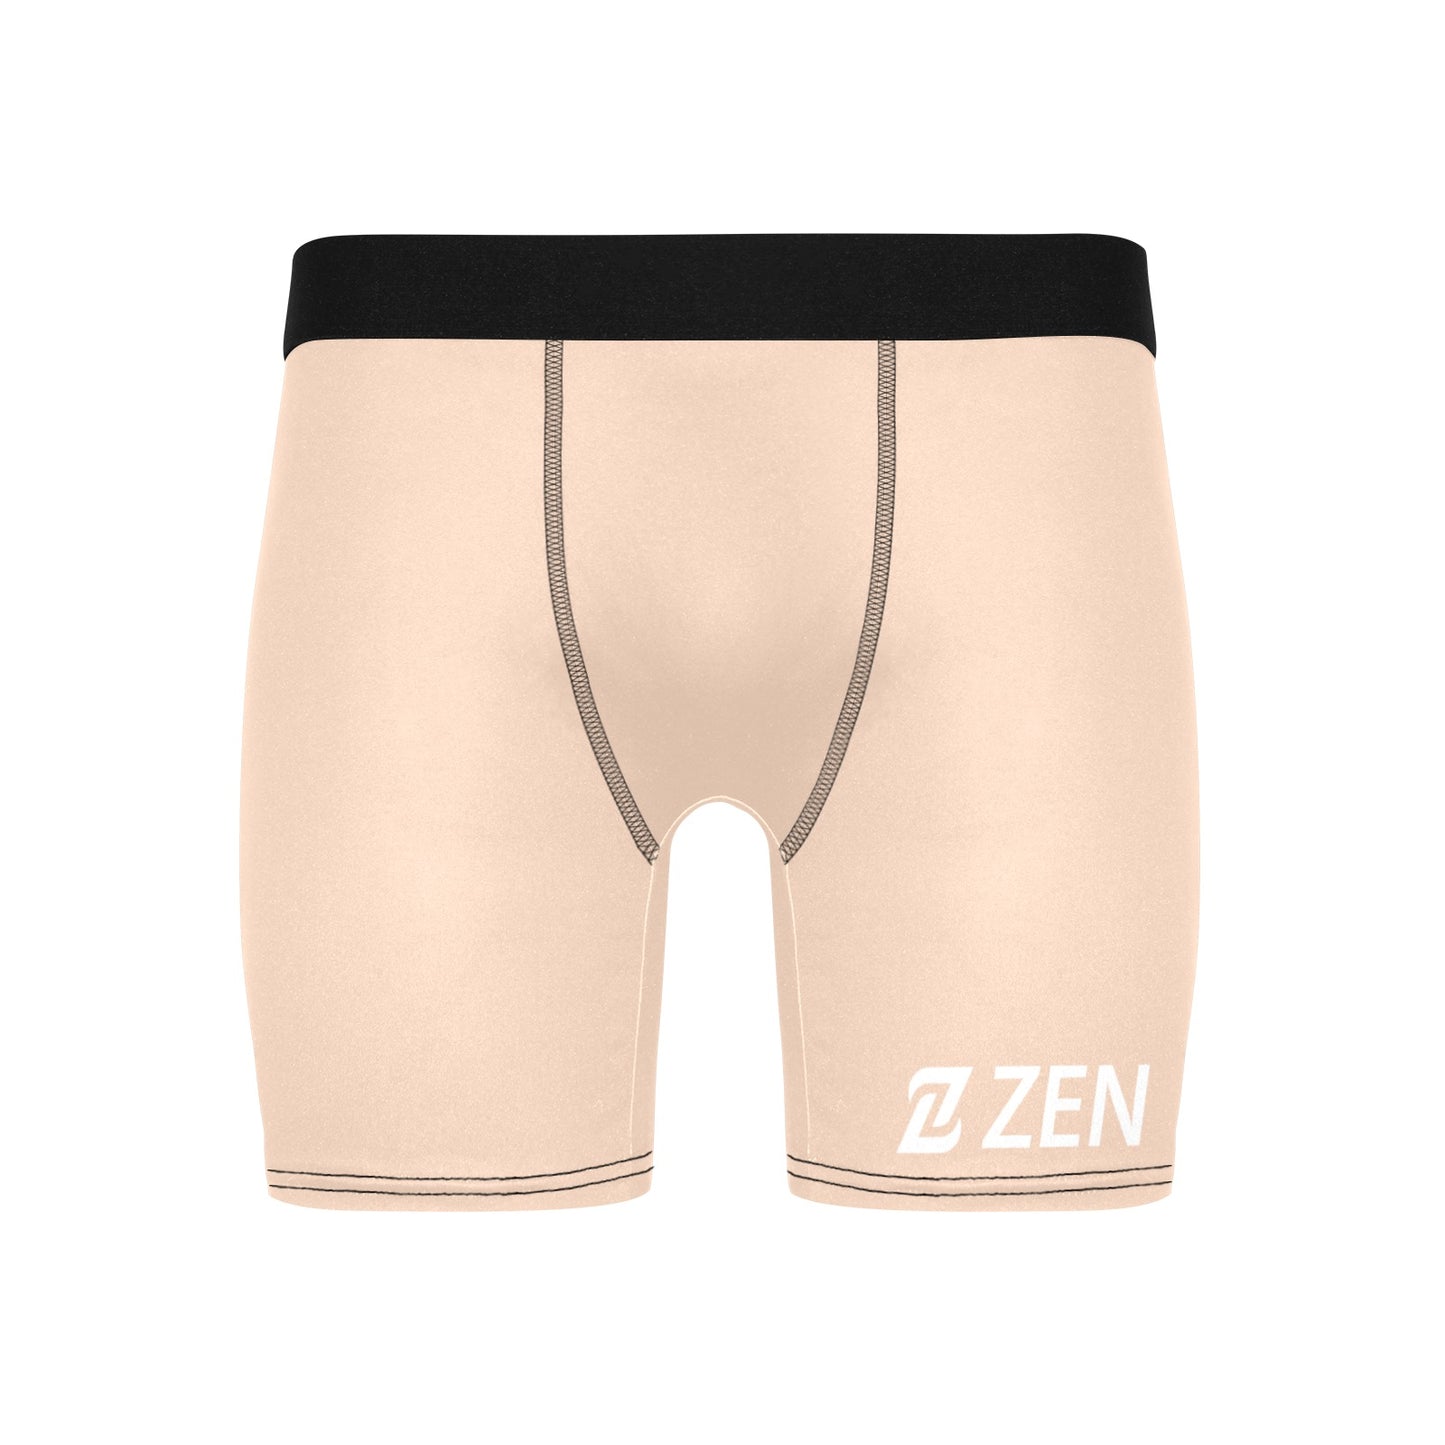 Zen Boxers Long - Nude Light